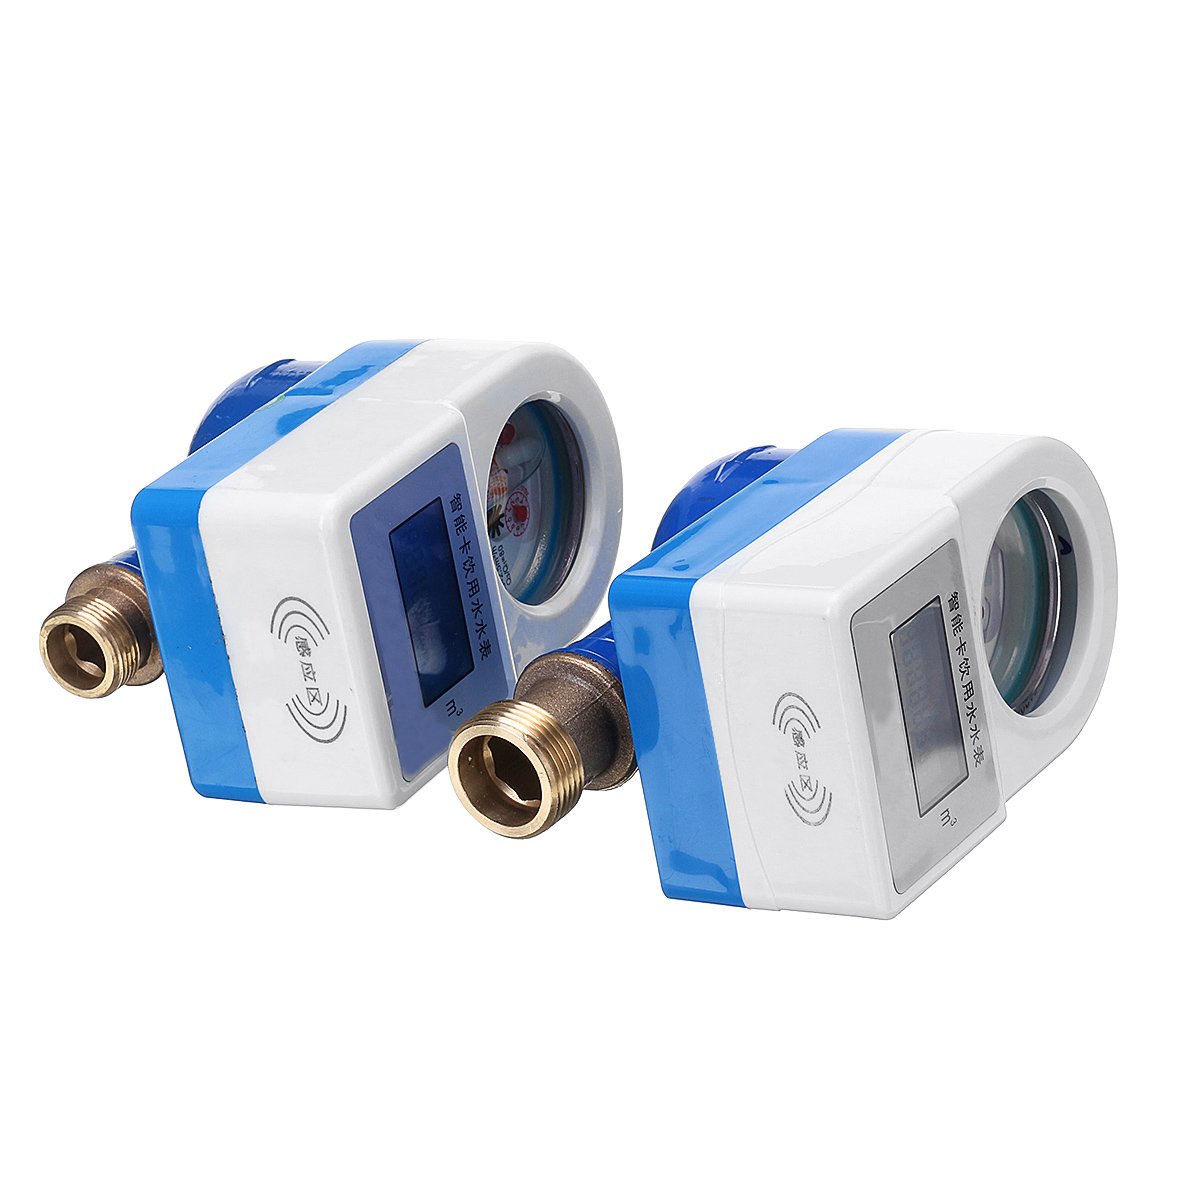 1520mm-Smart-Cold-Water-Meter-Wireless-Copper-Measuring-Tap-Home-Garden-Water-Flow-Sensor-1549744